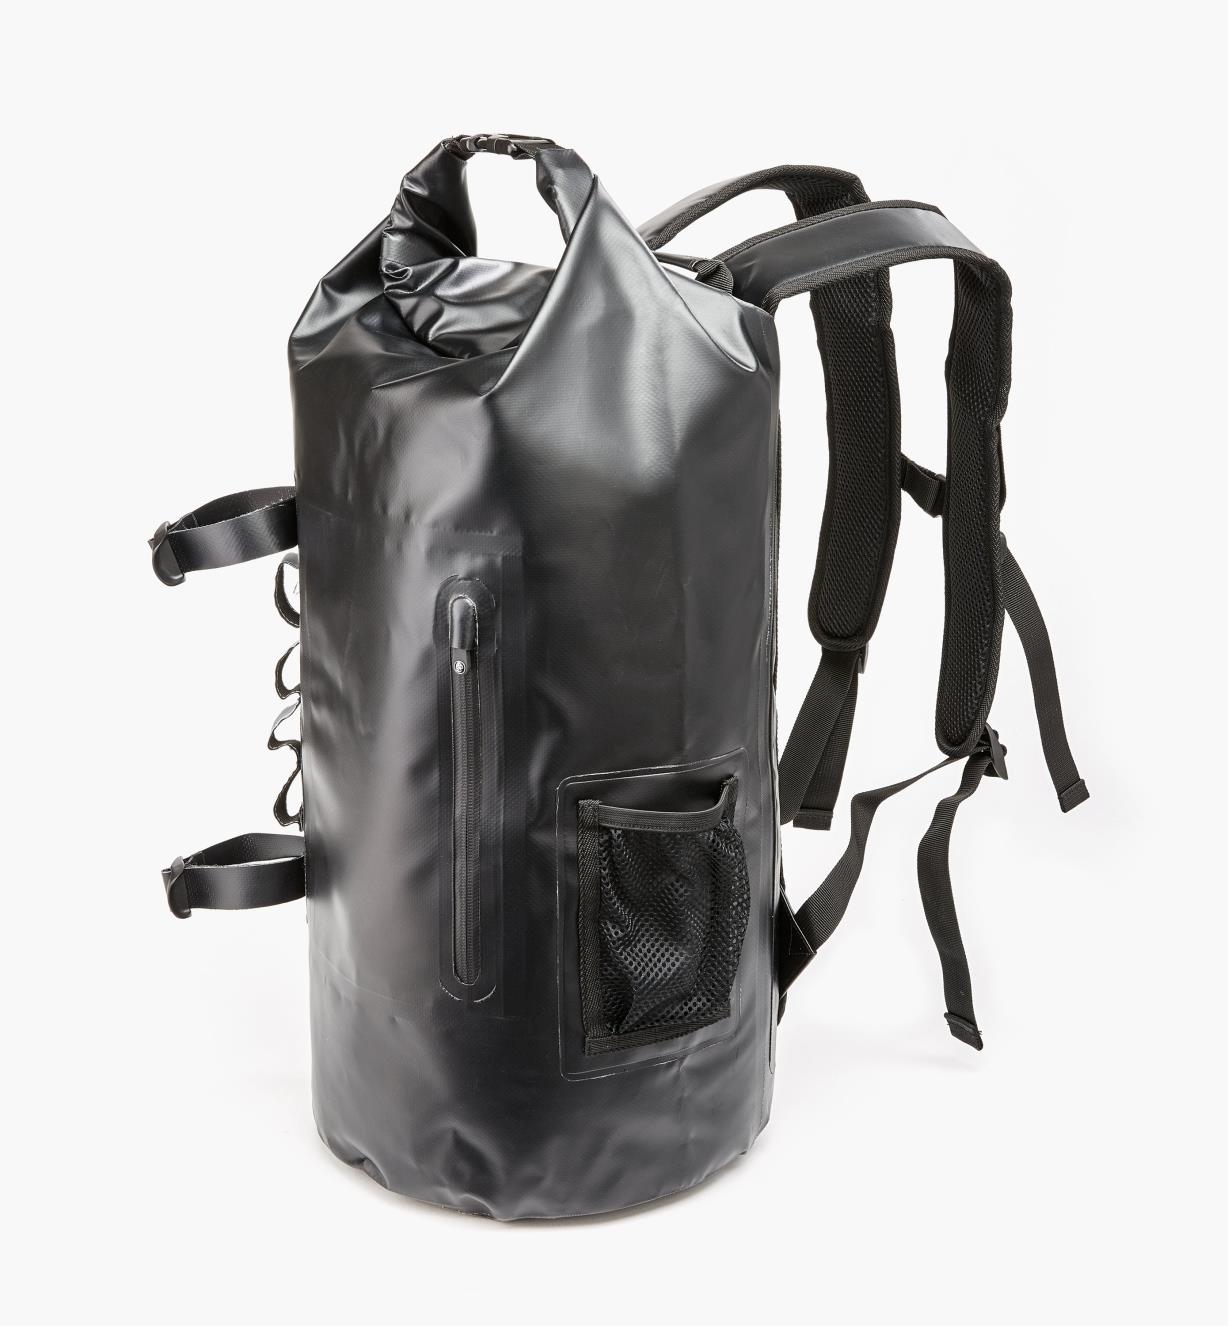 Share 160+ dry bag back pack - xkldase.edu.vn